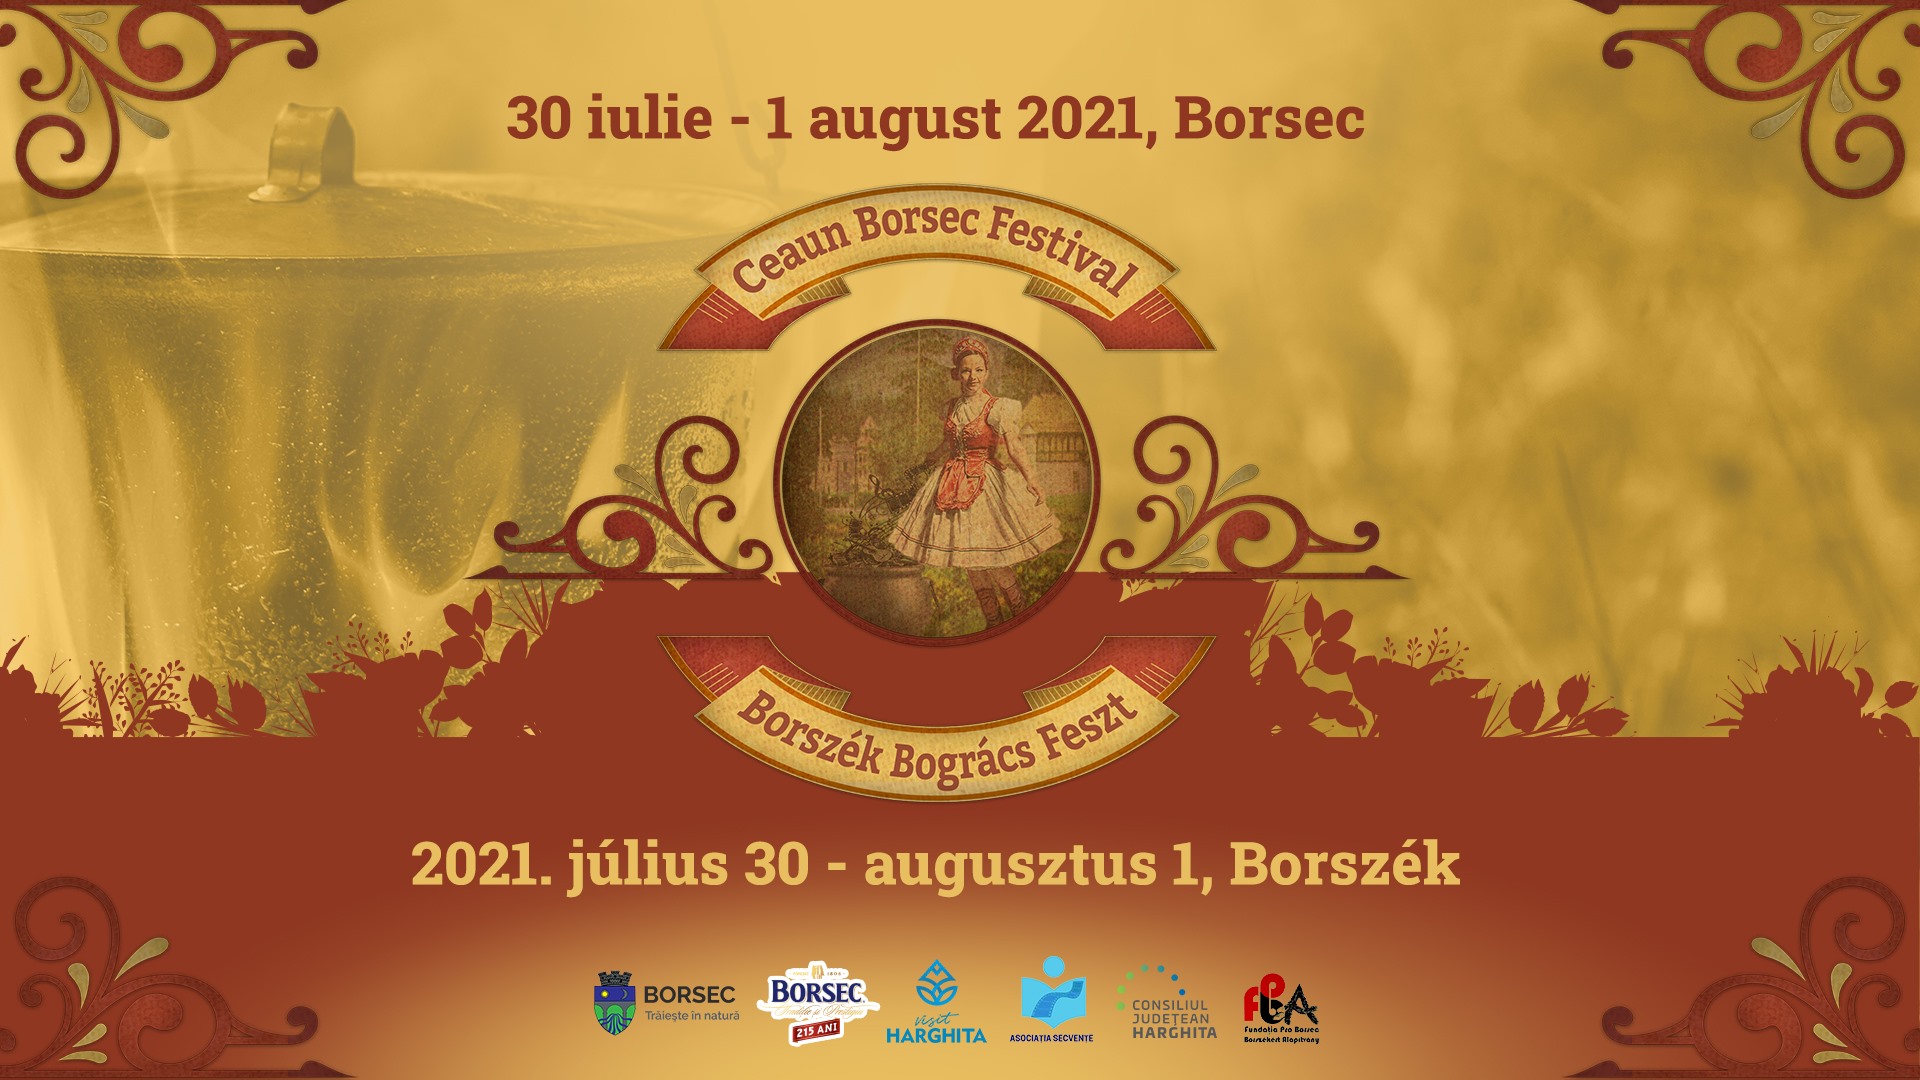 Cea1 Borsec Festival